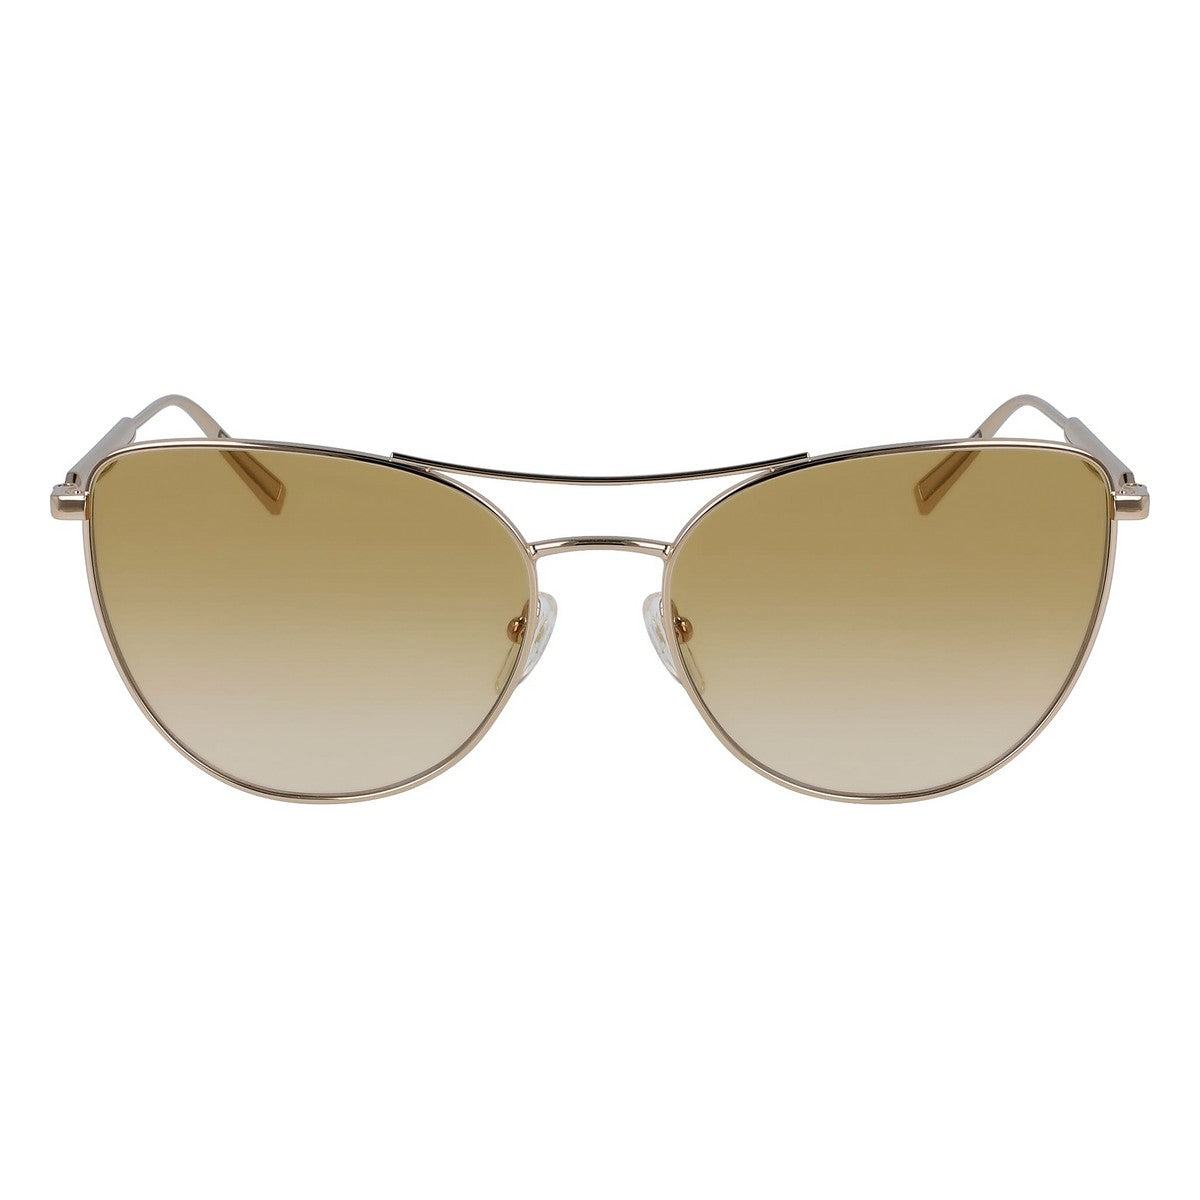 Kaufe Damensonnenbrille Longchamp LO134S-728 ø 58 mm bei AWK Flagship um € 69.00